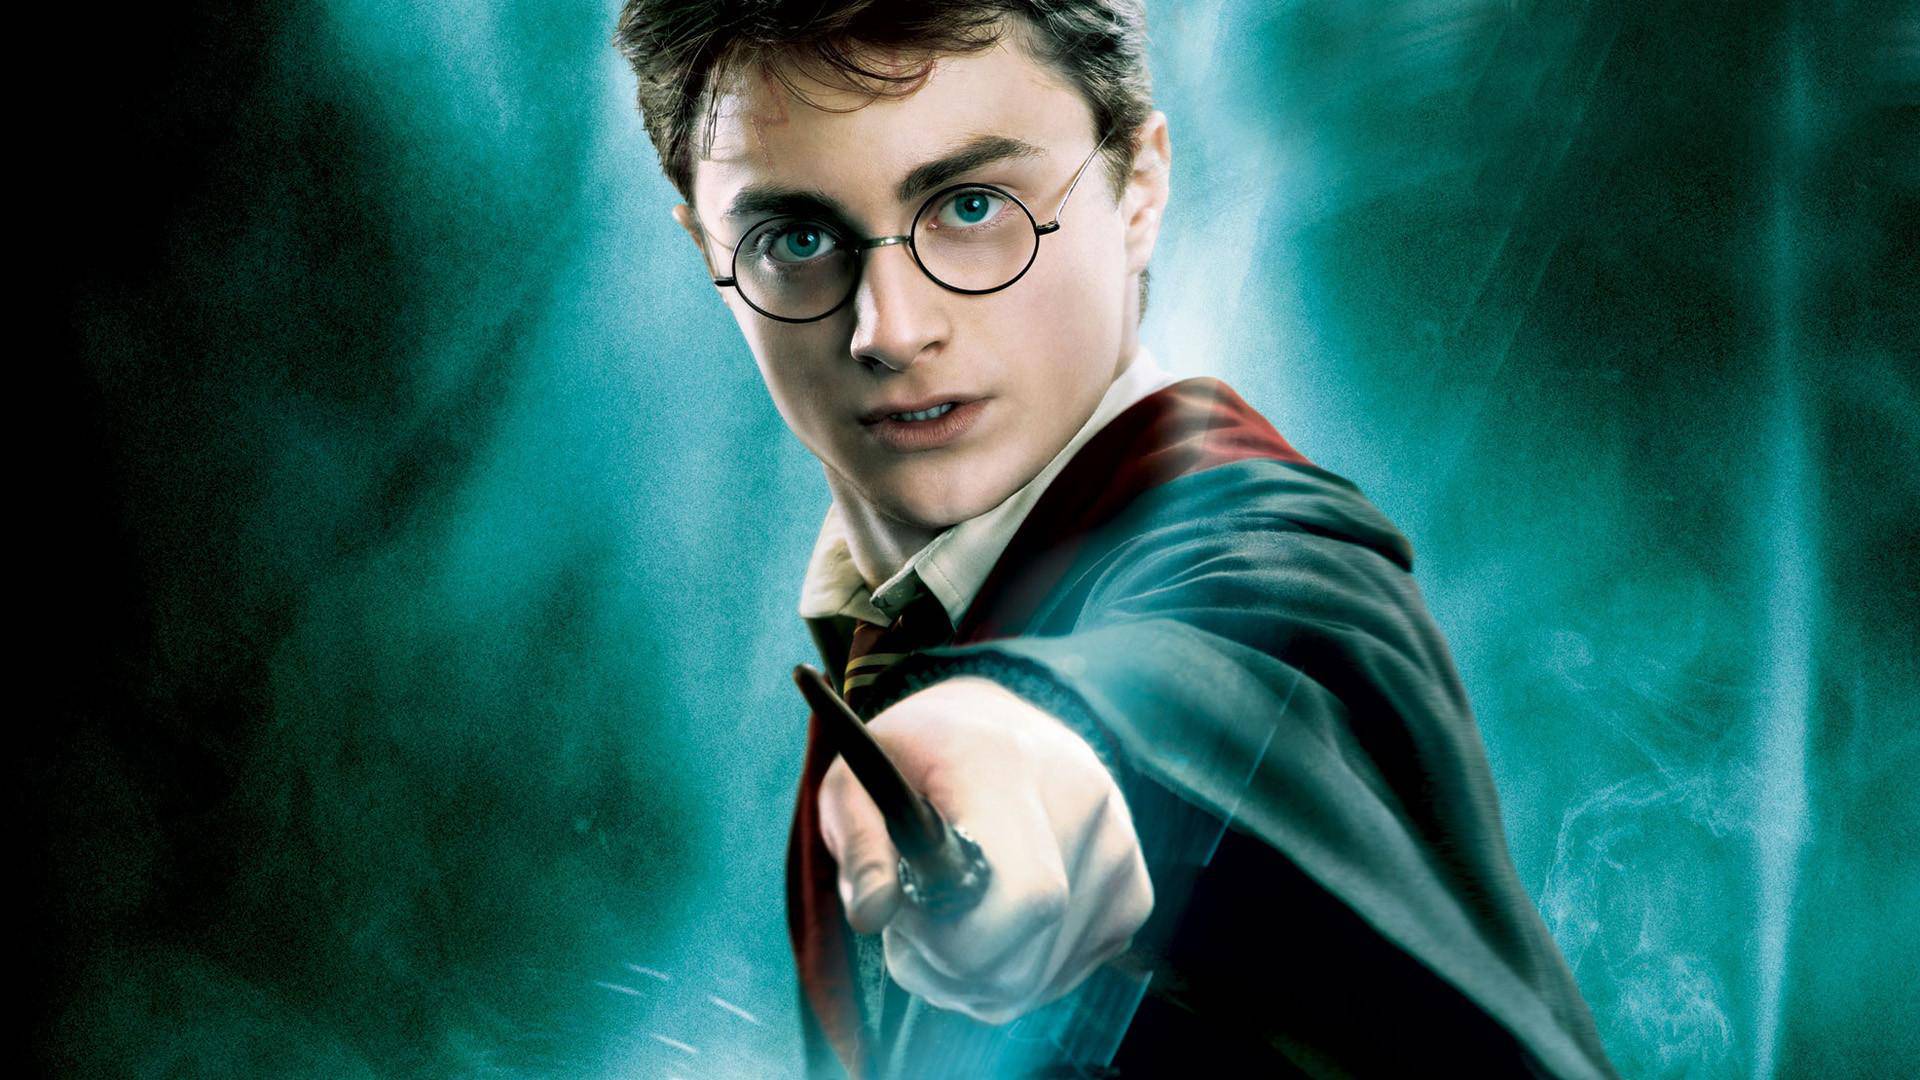 Ukradeno prvo izdanje Harryja Pottera vrijedno 40.000 funti